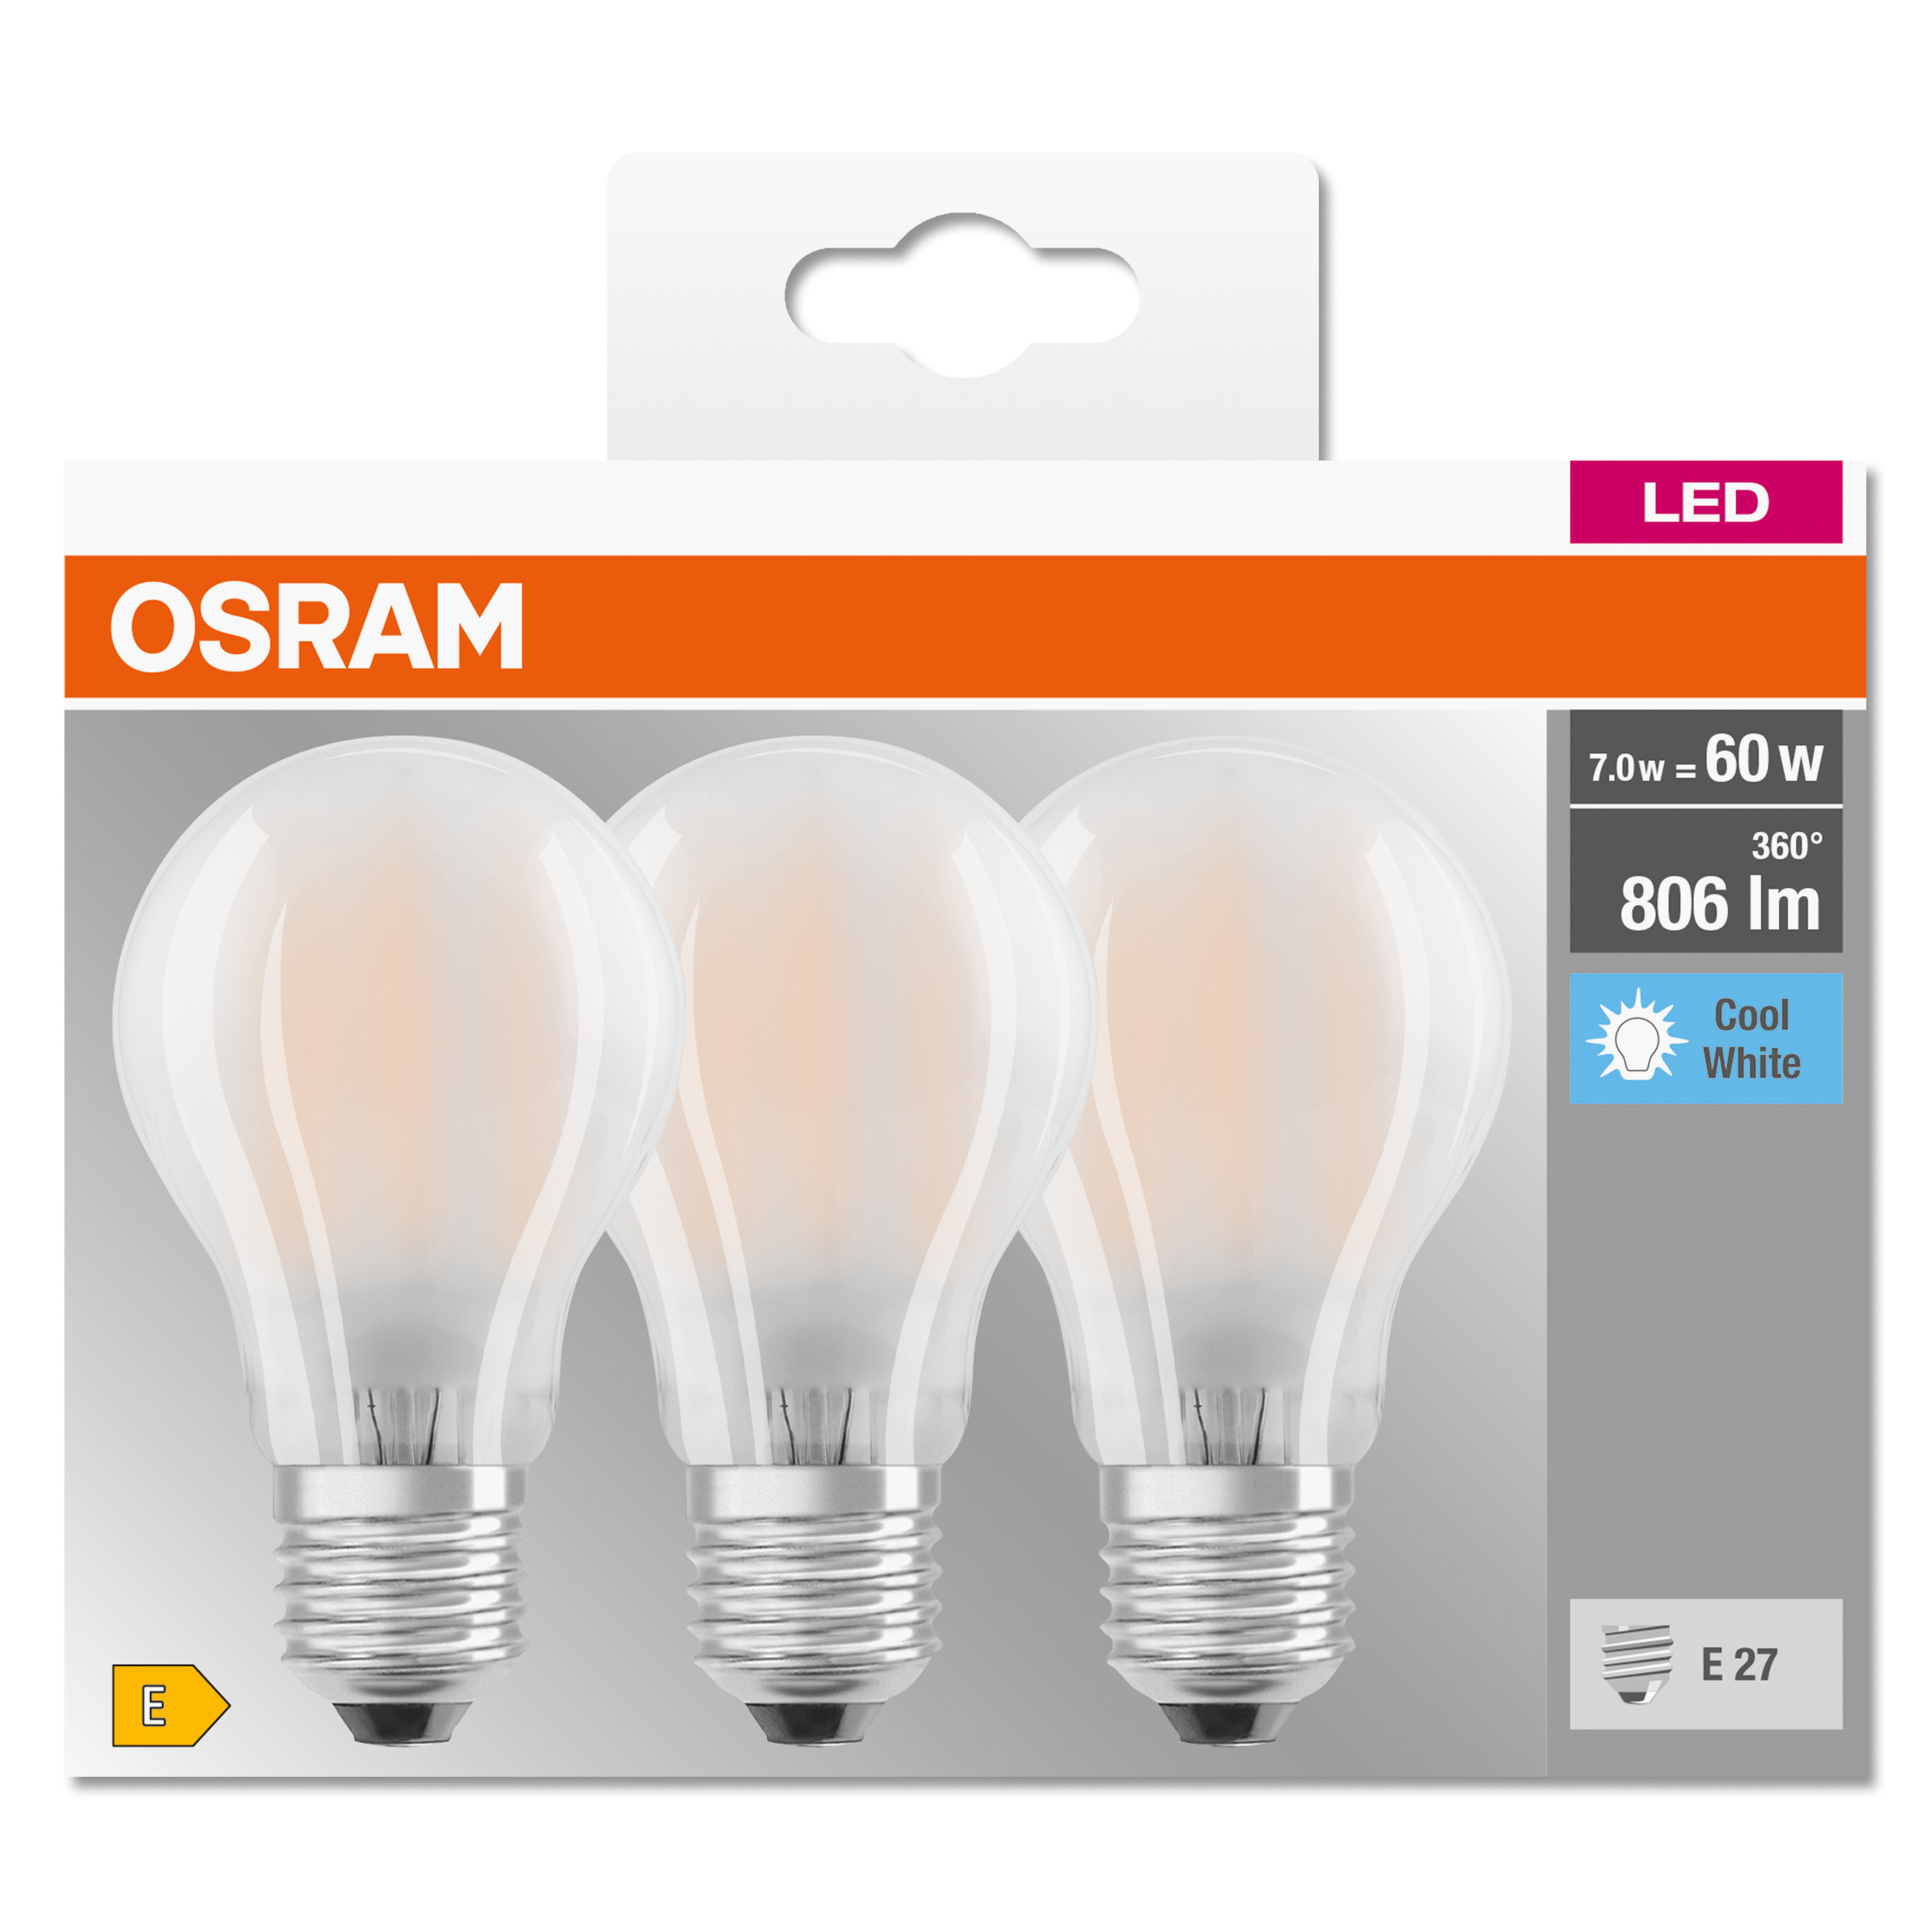 OSRAM  LED Kaltweiß CLASSIC lumen LED BASE Lampe 806 A